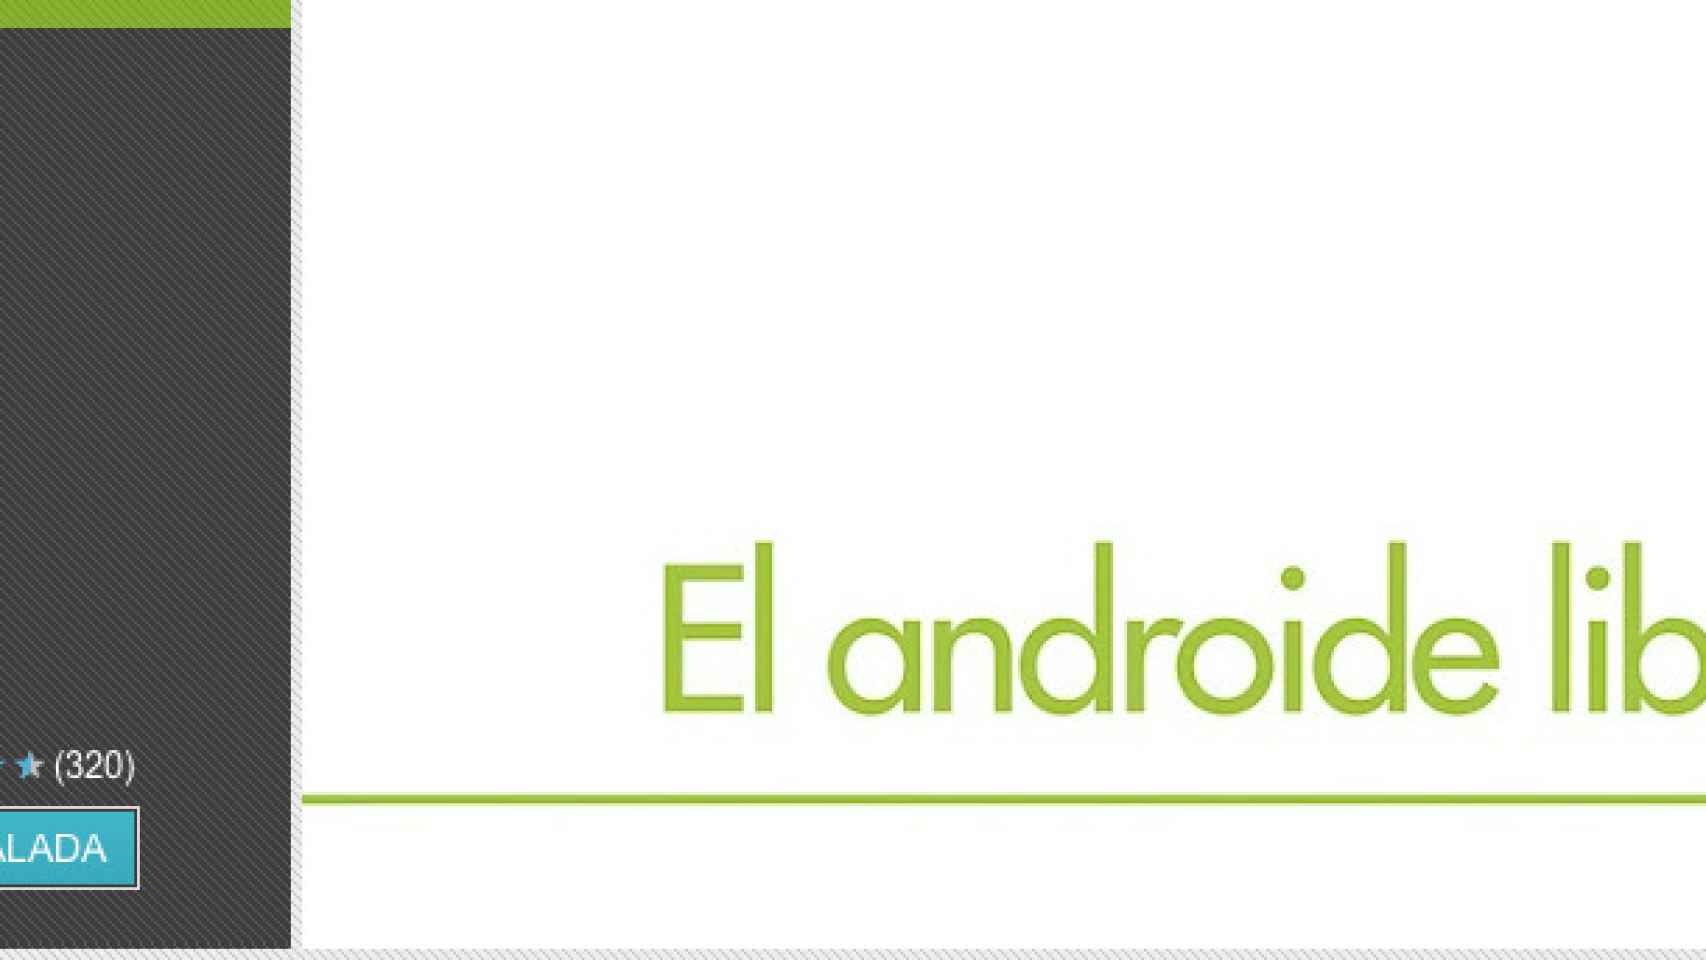 Bienvenidos todos al nuevo Androide Libre :)